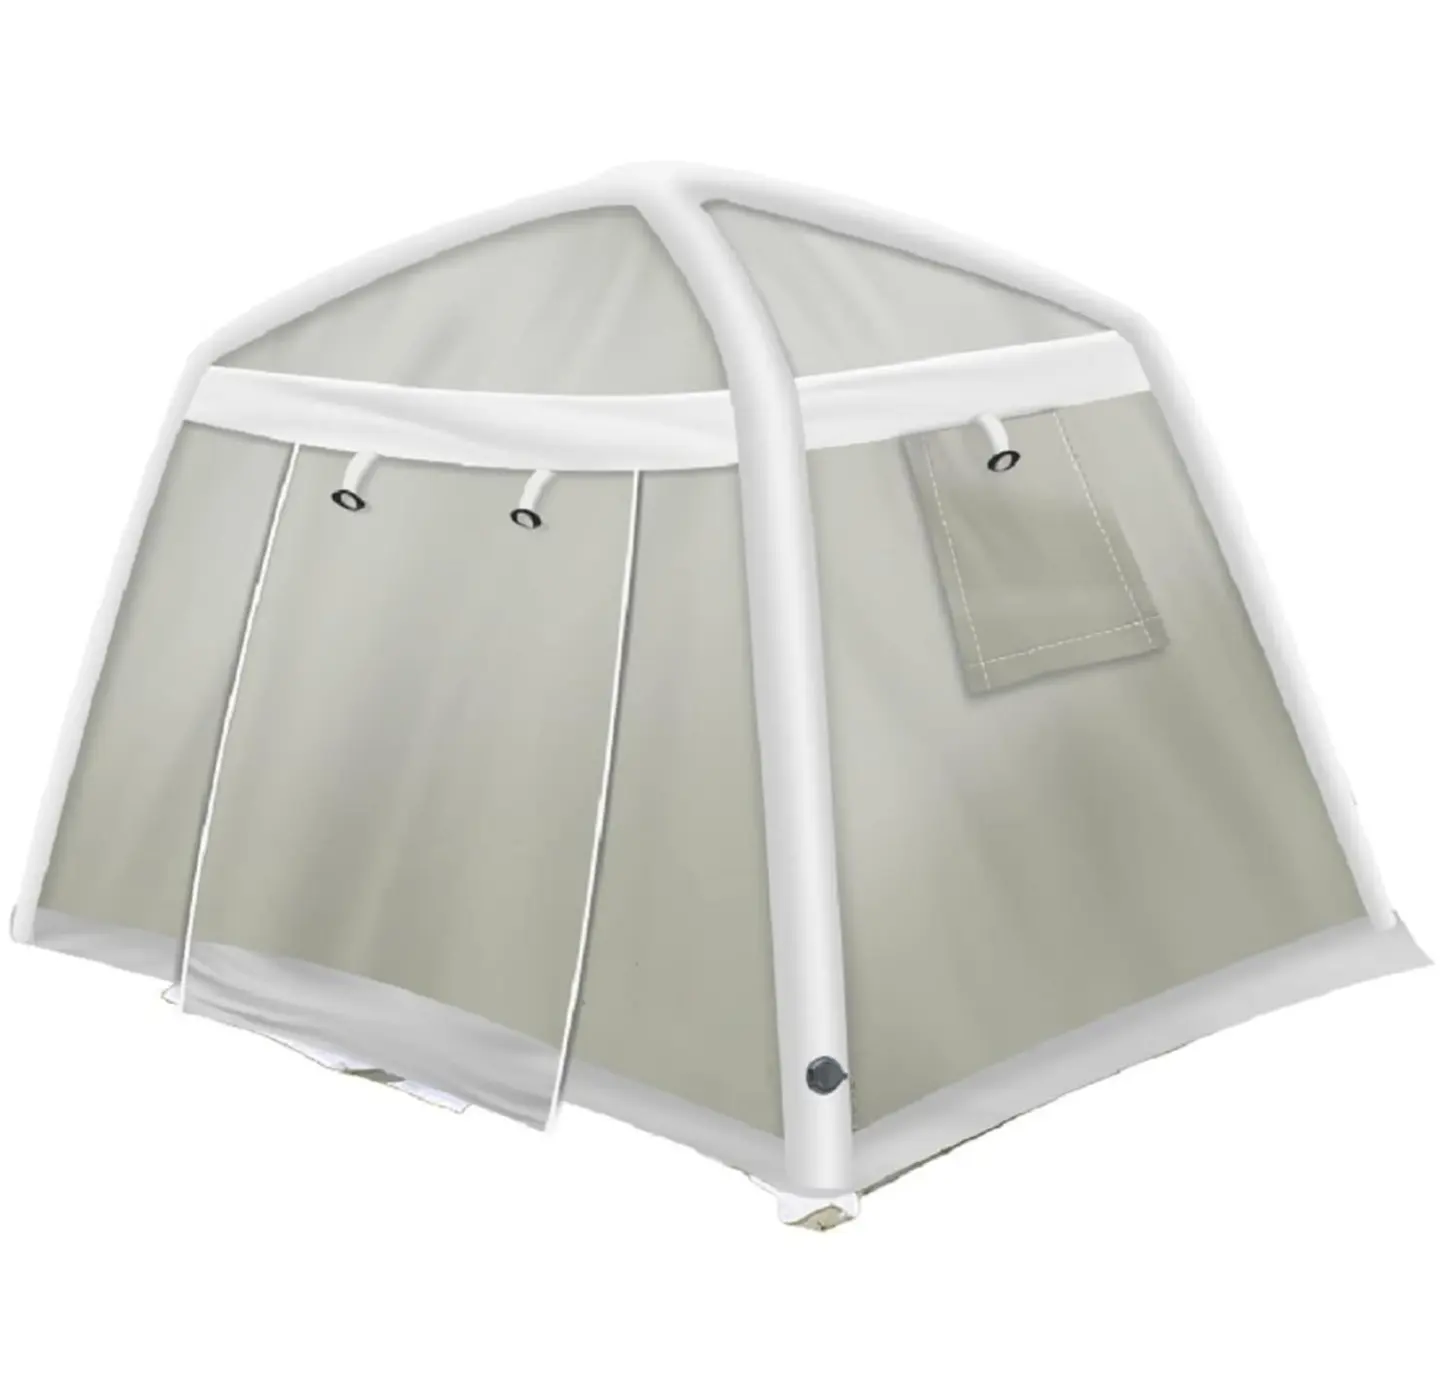 Tente de Camping pour 4 à 6 personnes, nouvelle tendance HITU, grand, étanche, pneumatique, gonflable, pour l'extérieur, pelouse, arabe, à vendre